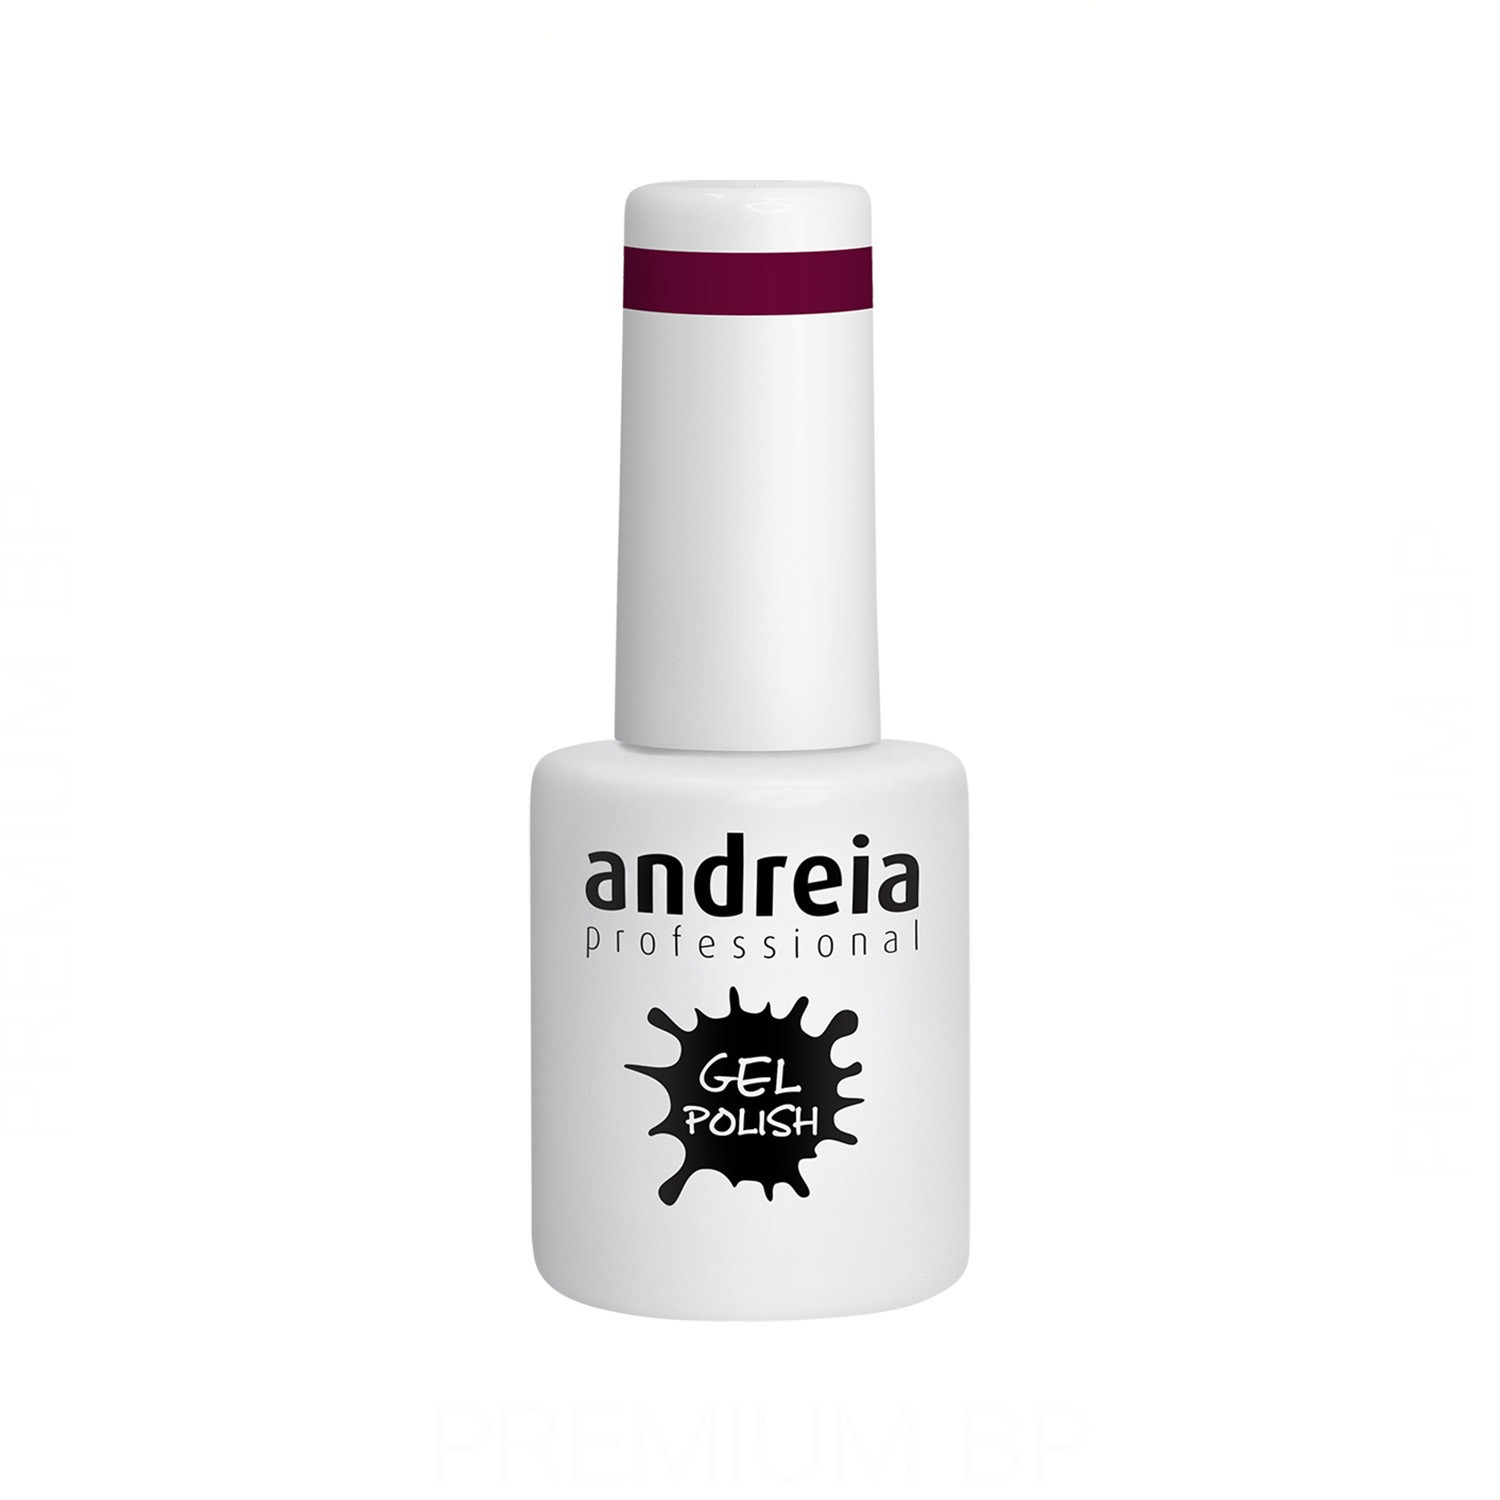 Andreia - Andreia professional gel polish esmalte semipermanente 10,5 ml color 228, esmalte semipermanente con duración de 4 semanas color magenta